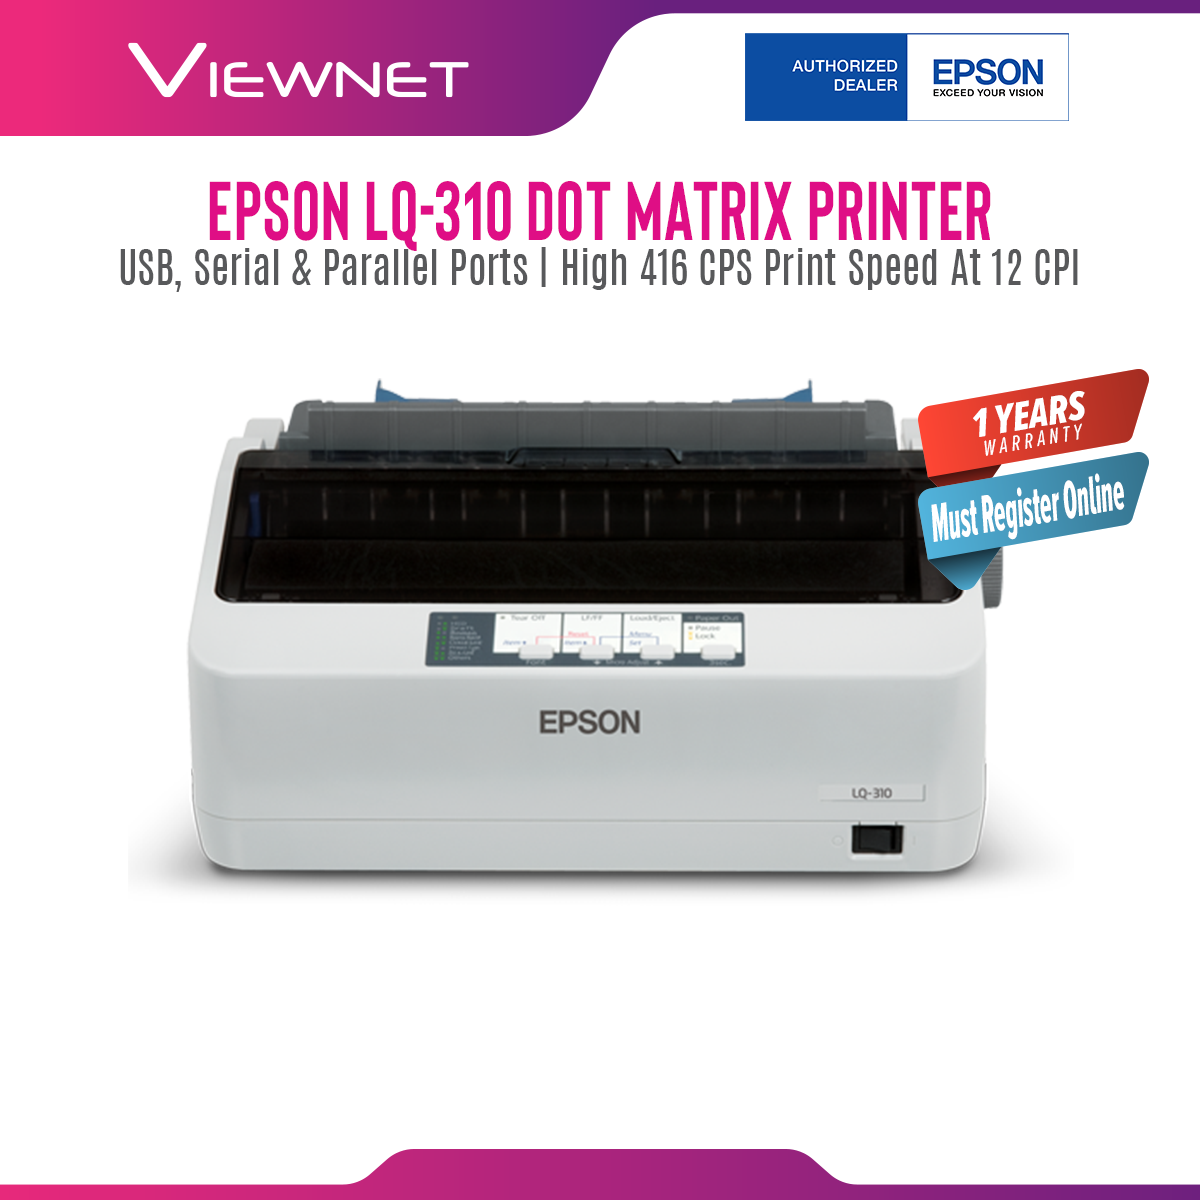 EPSON LQ-310 Dot Matrix Printer